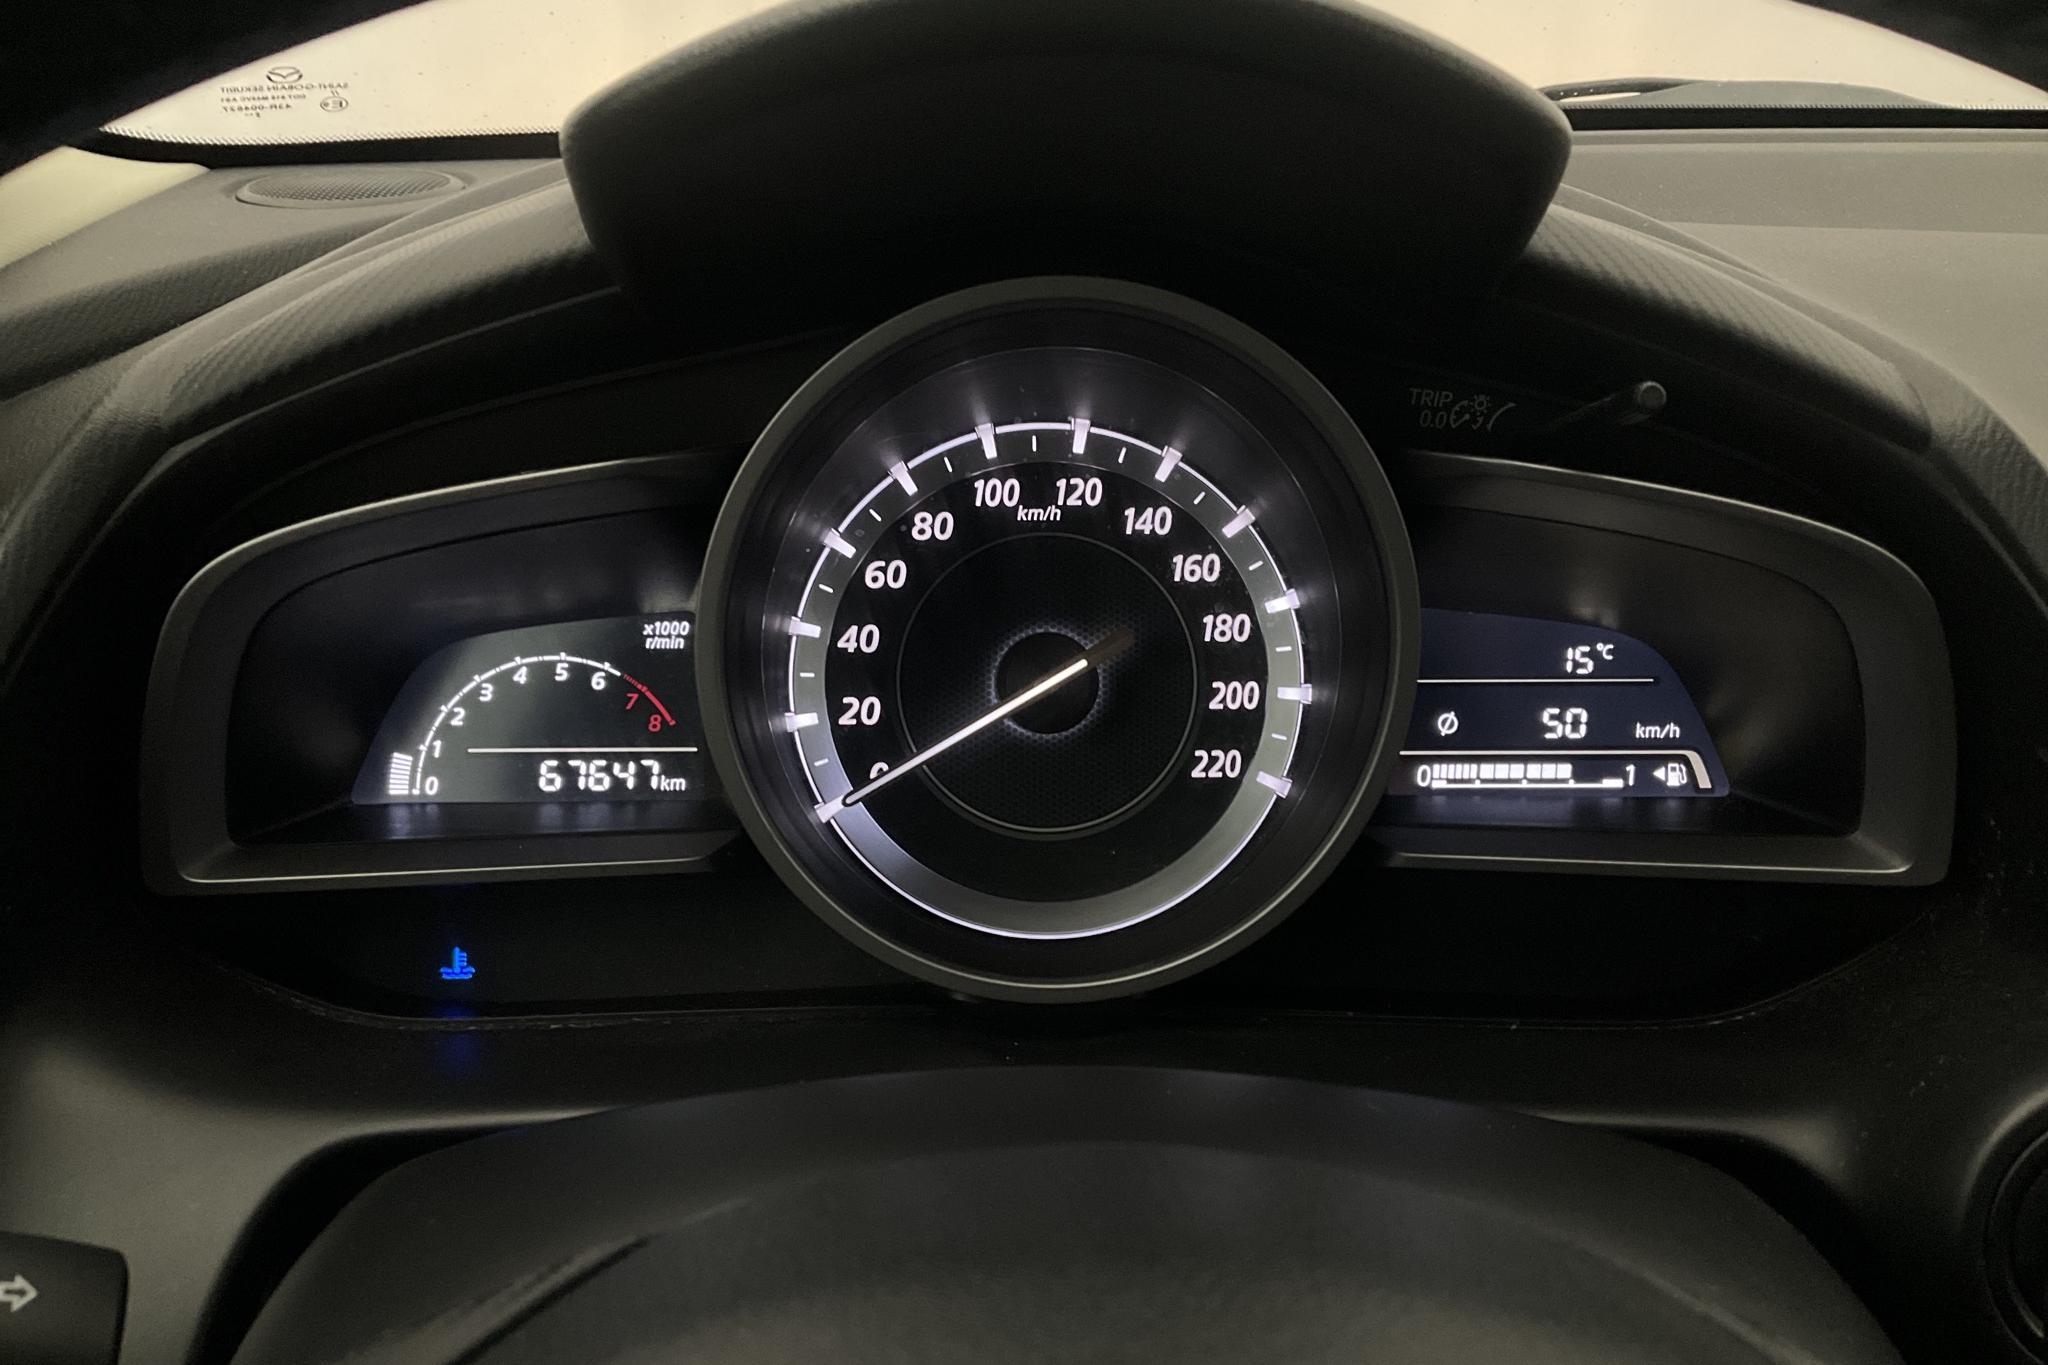 Mazda 2 1.5 5dr (90hk) - 67 640 km - Manual - gray - 2017